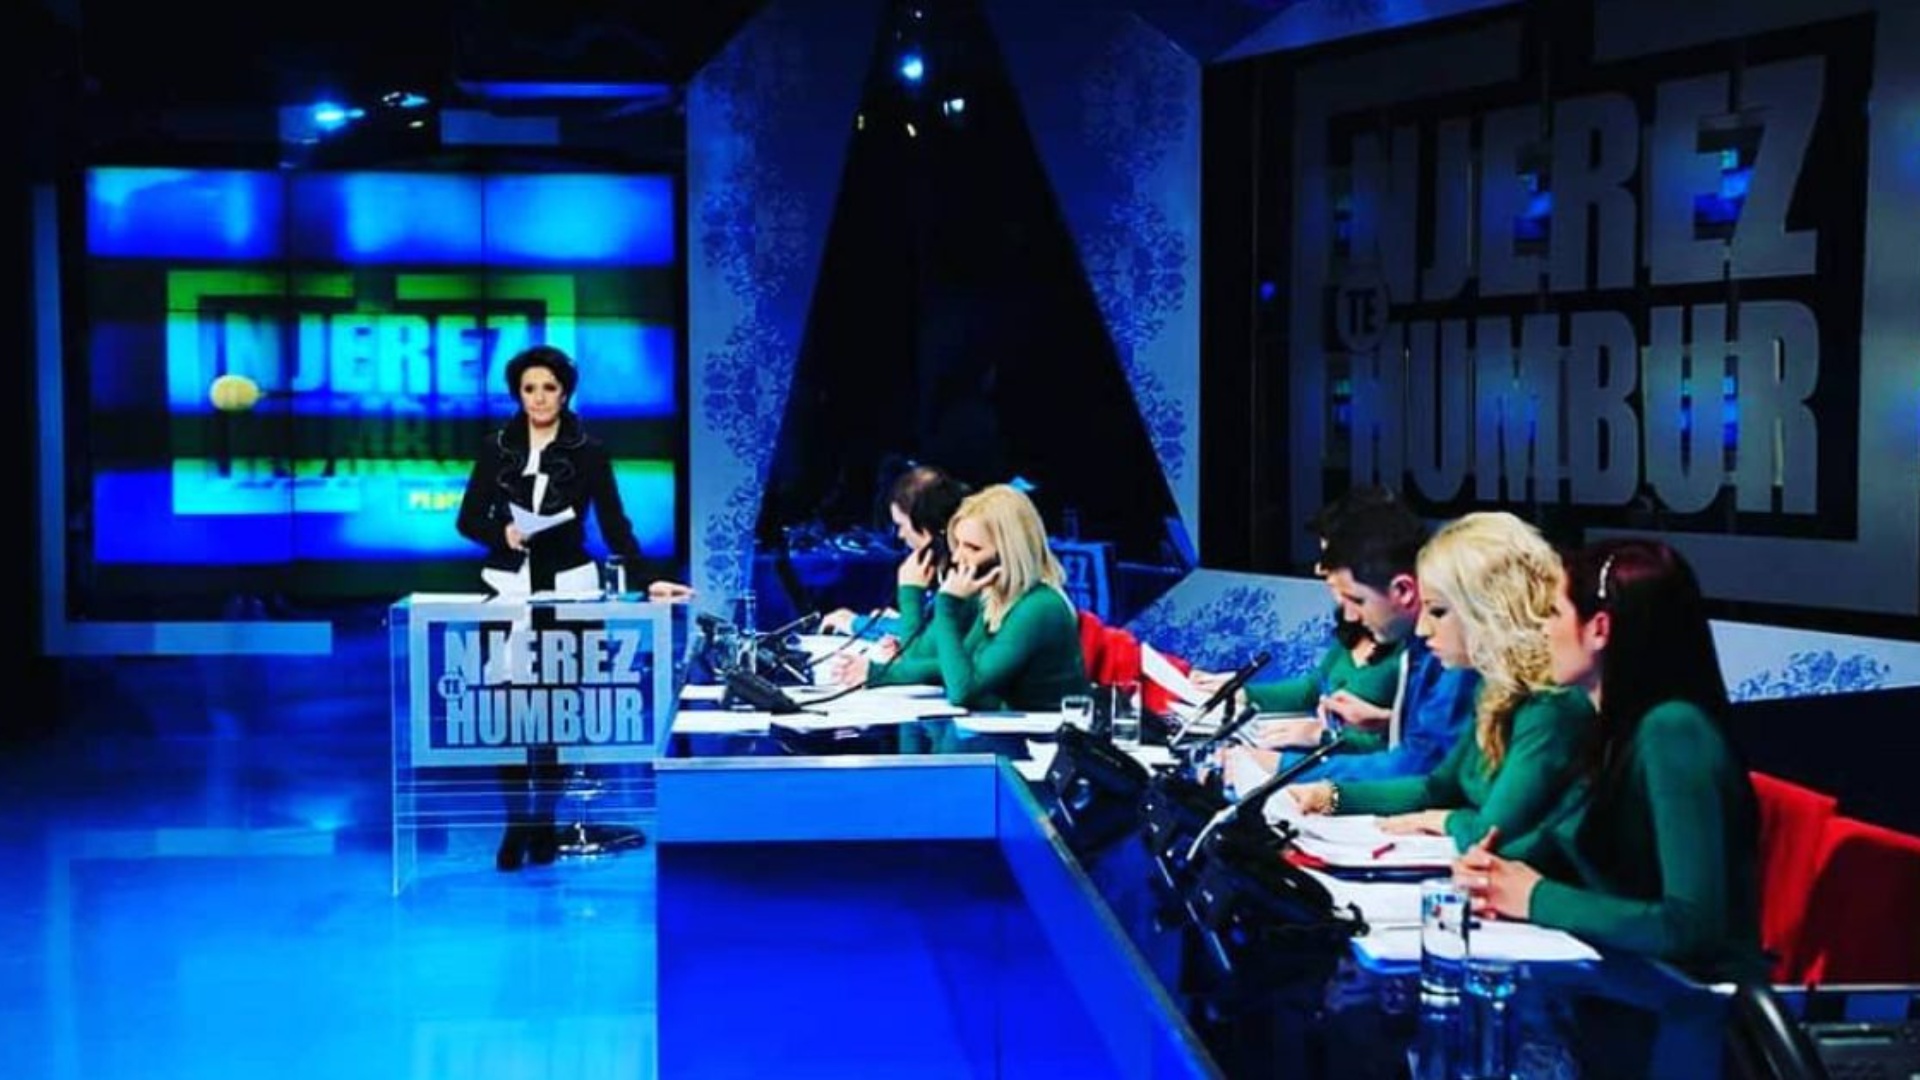 Ekskluzivisht për TAR/ Aida Shtino tregon të vërtetën e mbylljes së emisionit “Njerëz të humbur”!